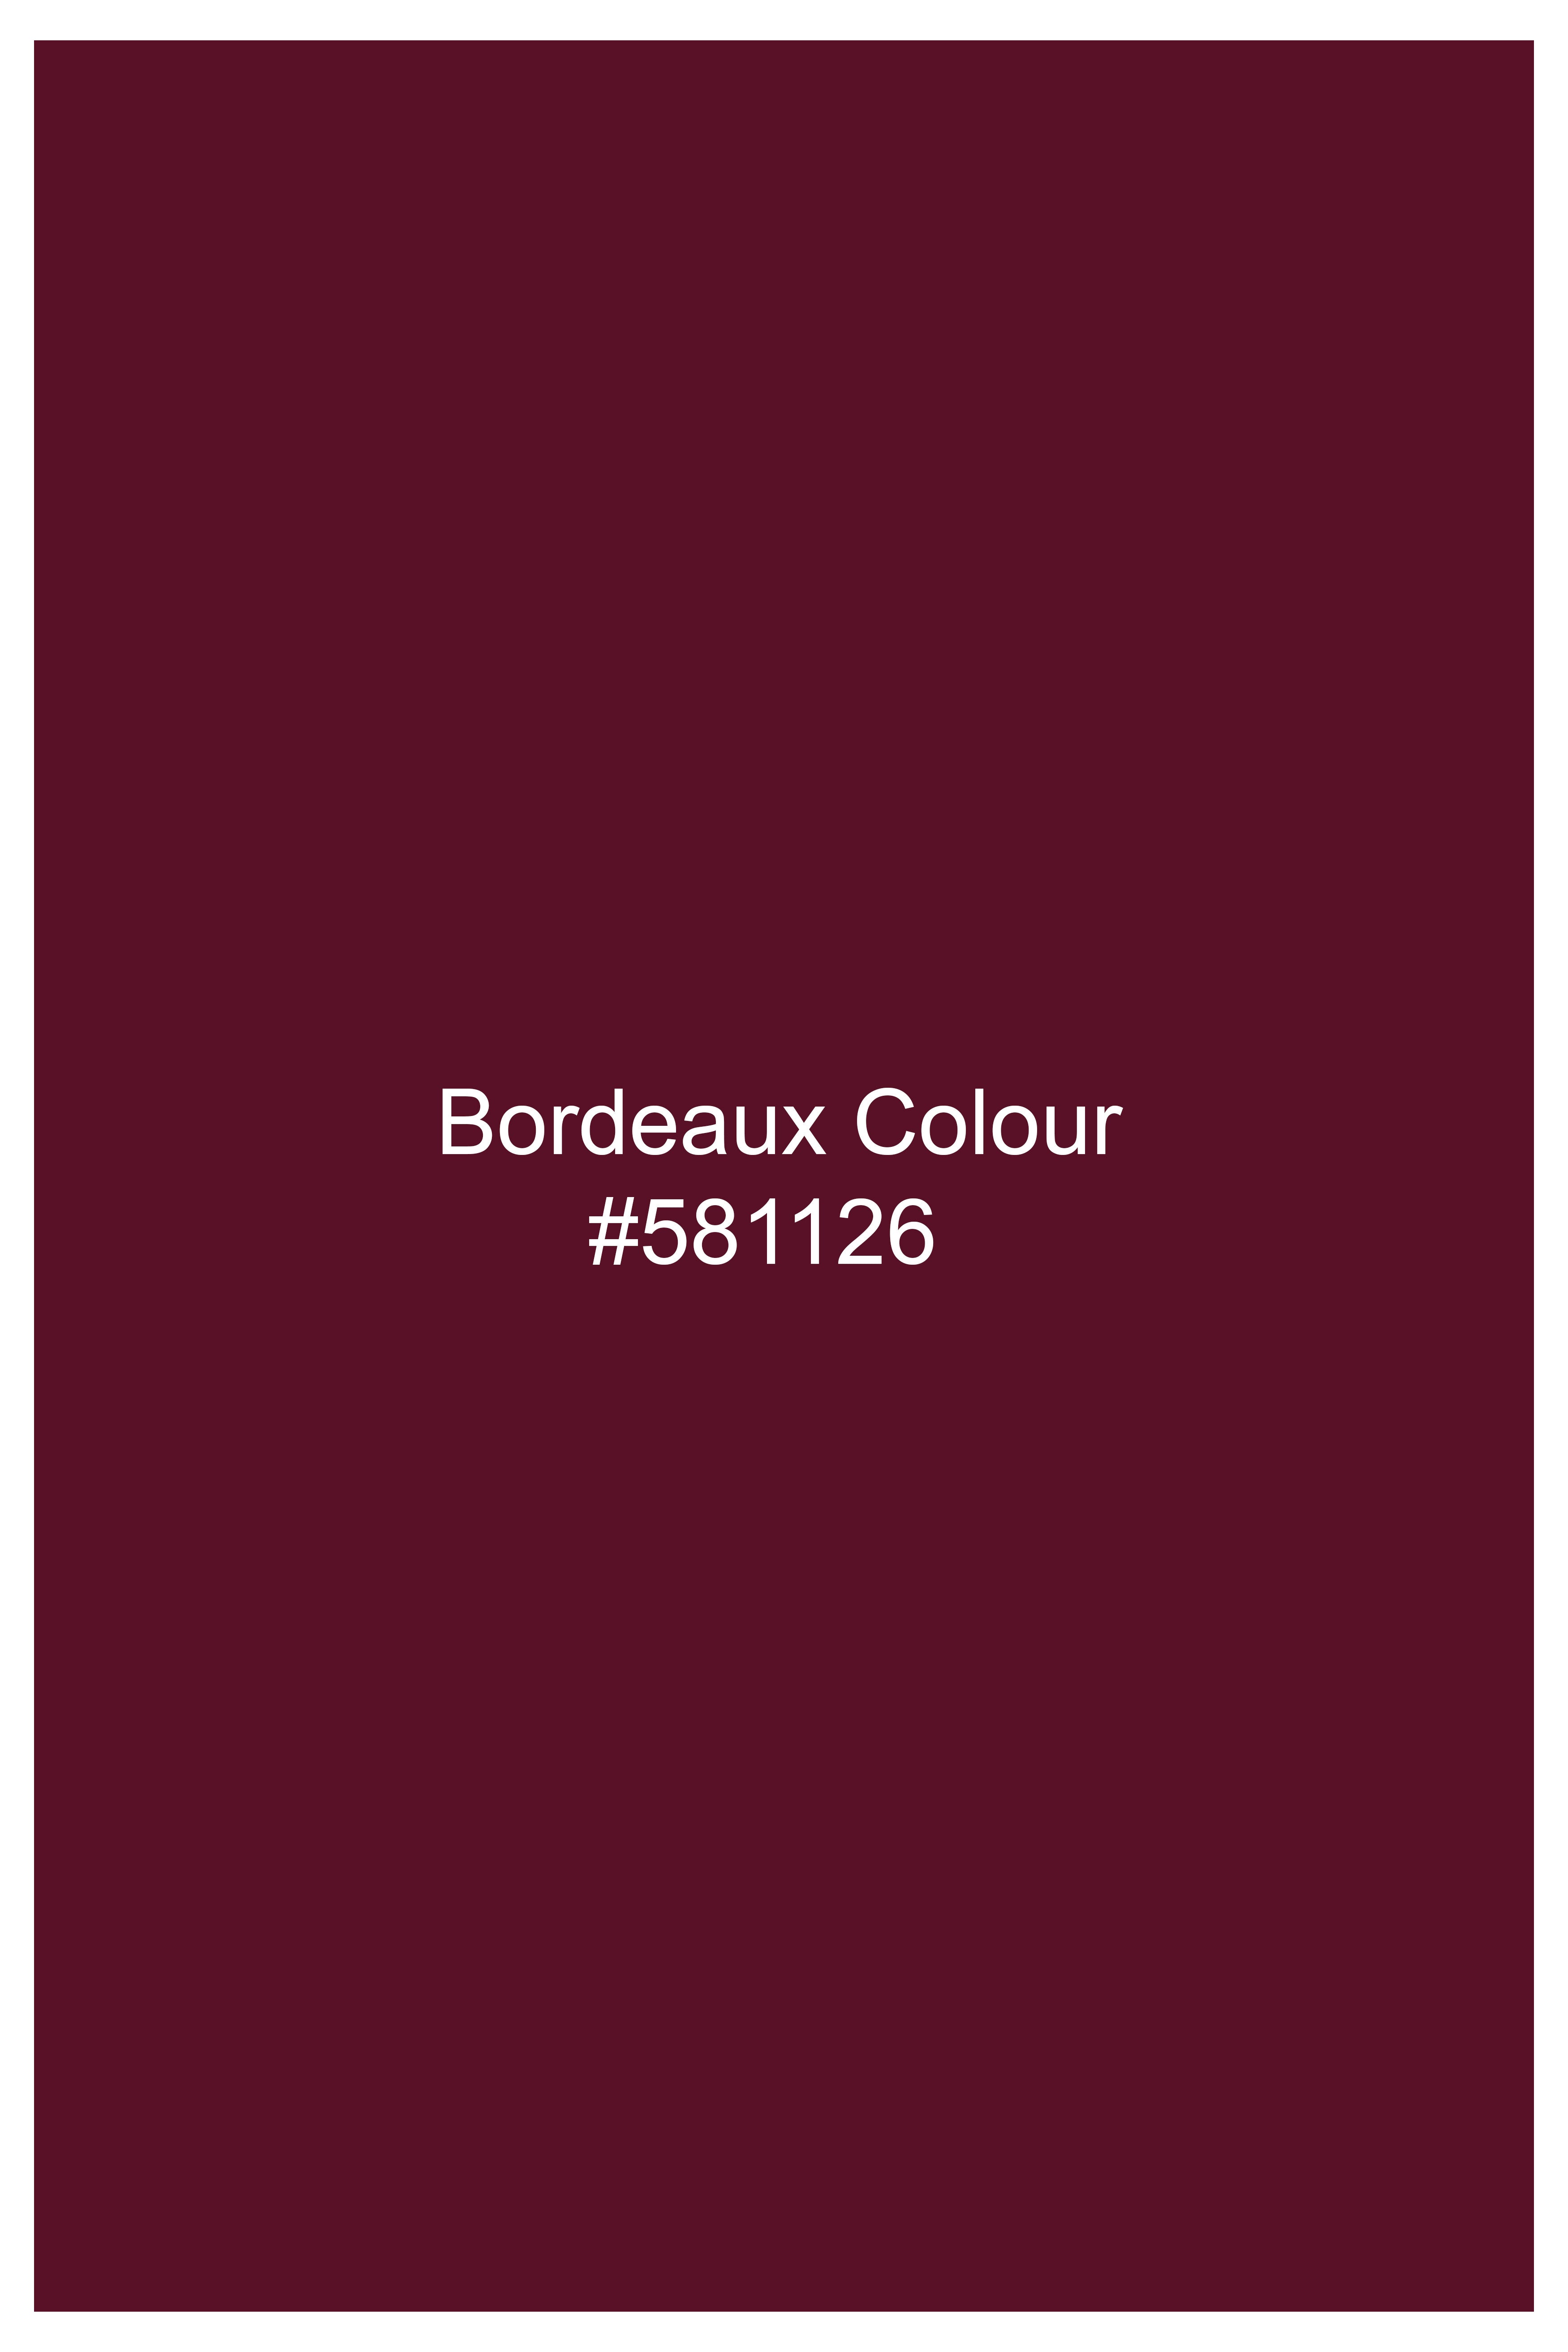 Bordeaux Maroon Wool Rich Pant T3050-28, T3050-30, T3050-32, T3050-34, T3050-36, T3050-38, T3050-40, T3050-42, T3050-44